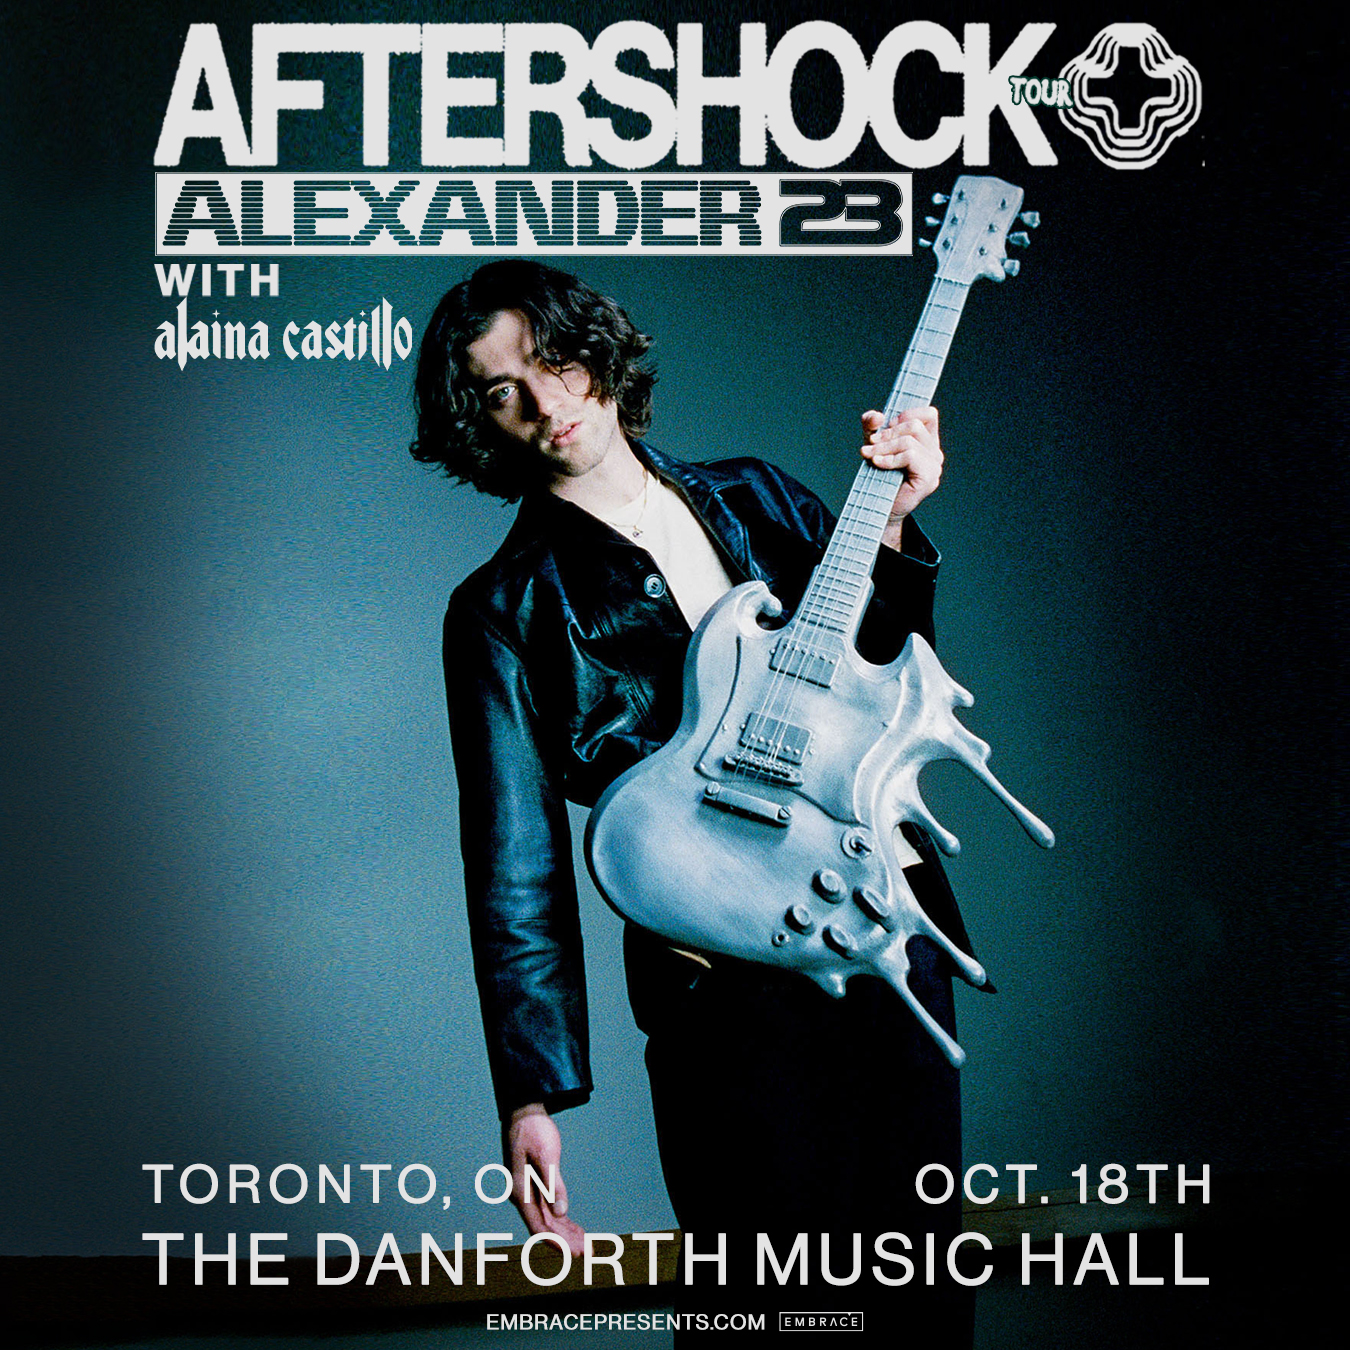 alexander 23 aftershock tour setlist